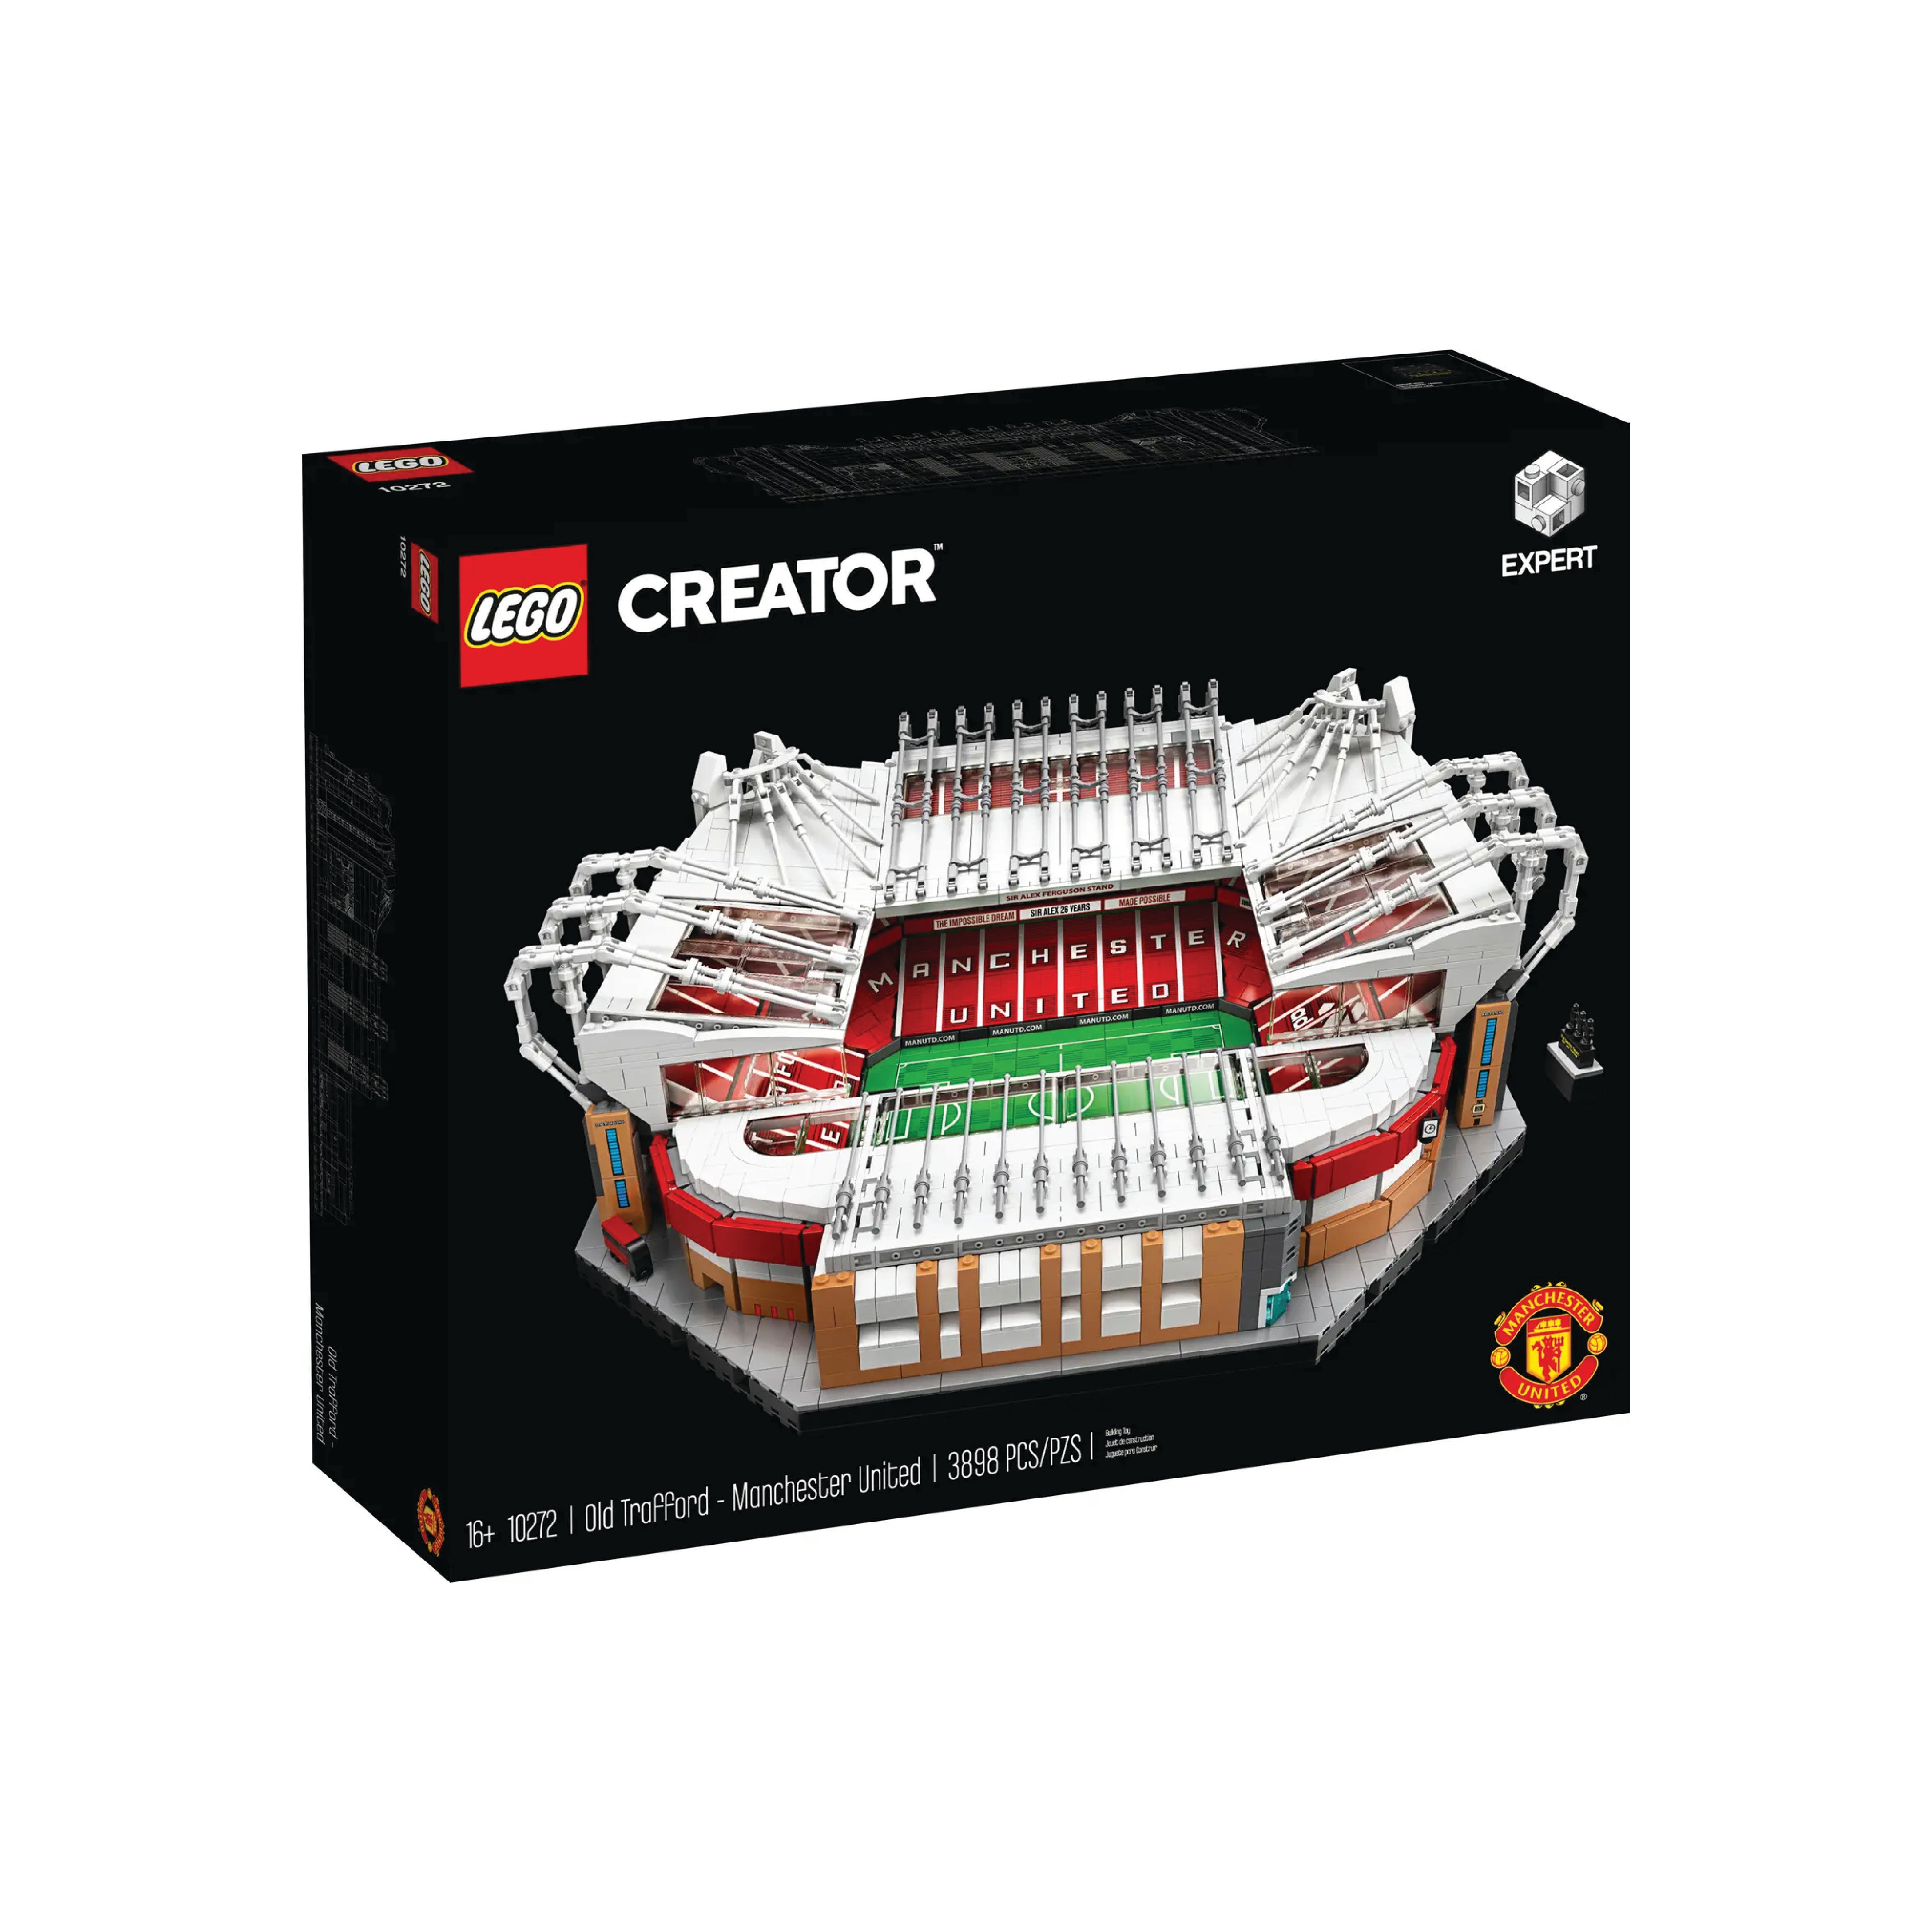 Lego Old Trafford - Manchester United